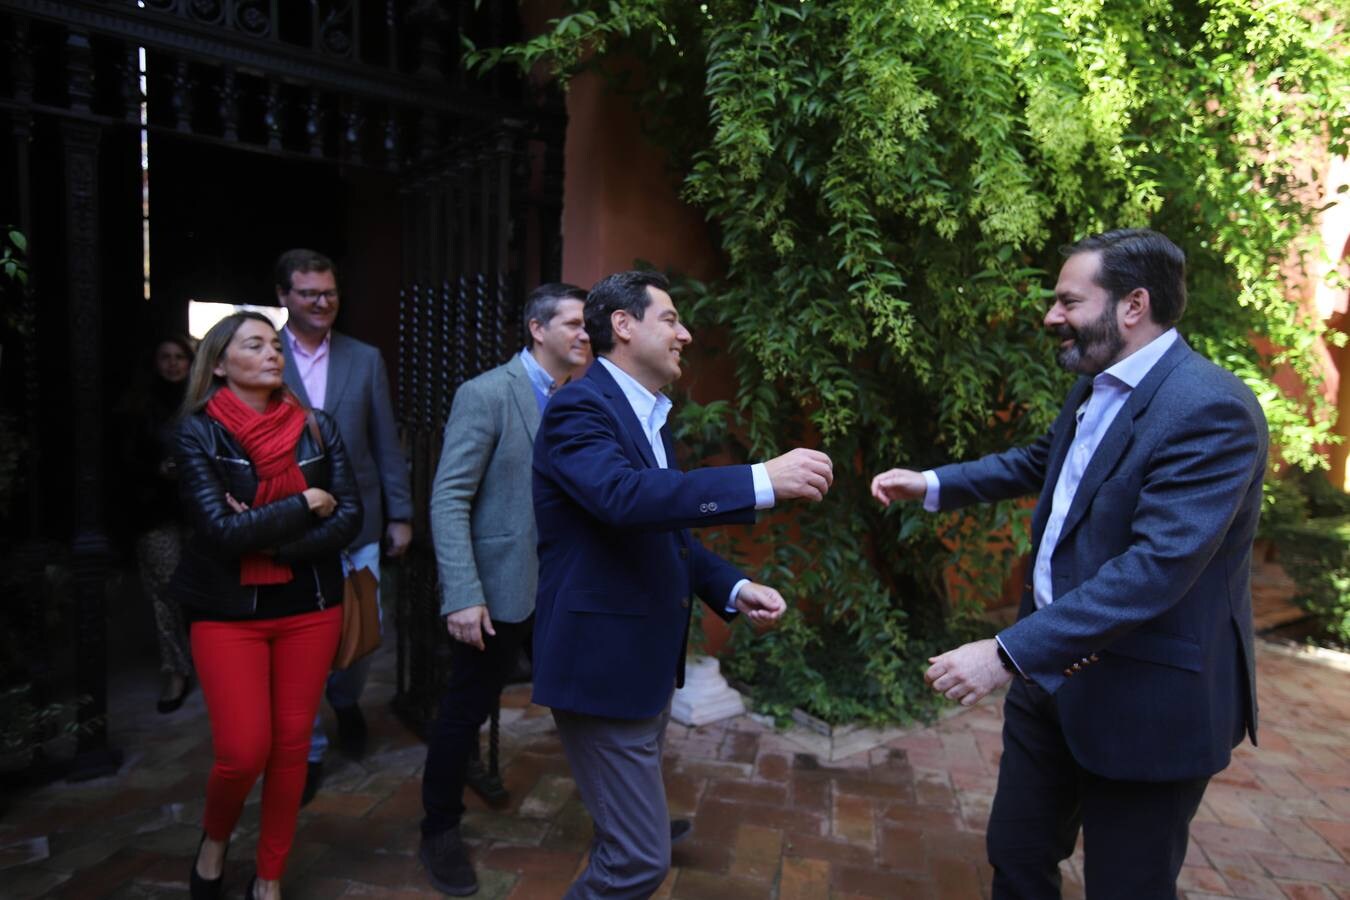 La presentación en Palma del Río de las listas del PP a las elecciones andaluzas, en imágenes